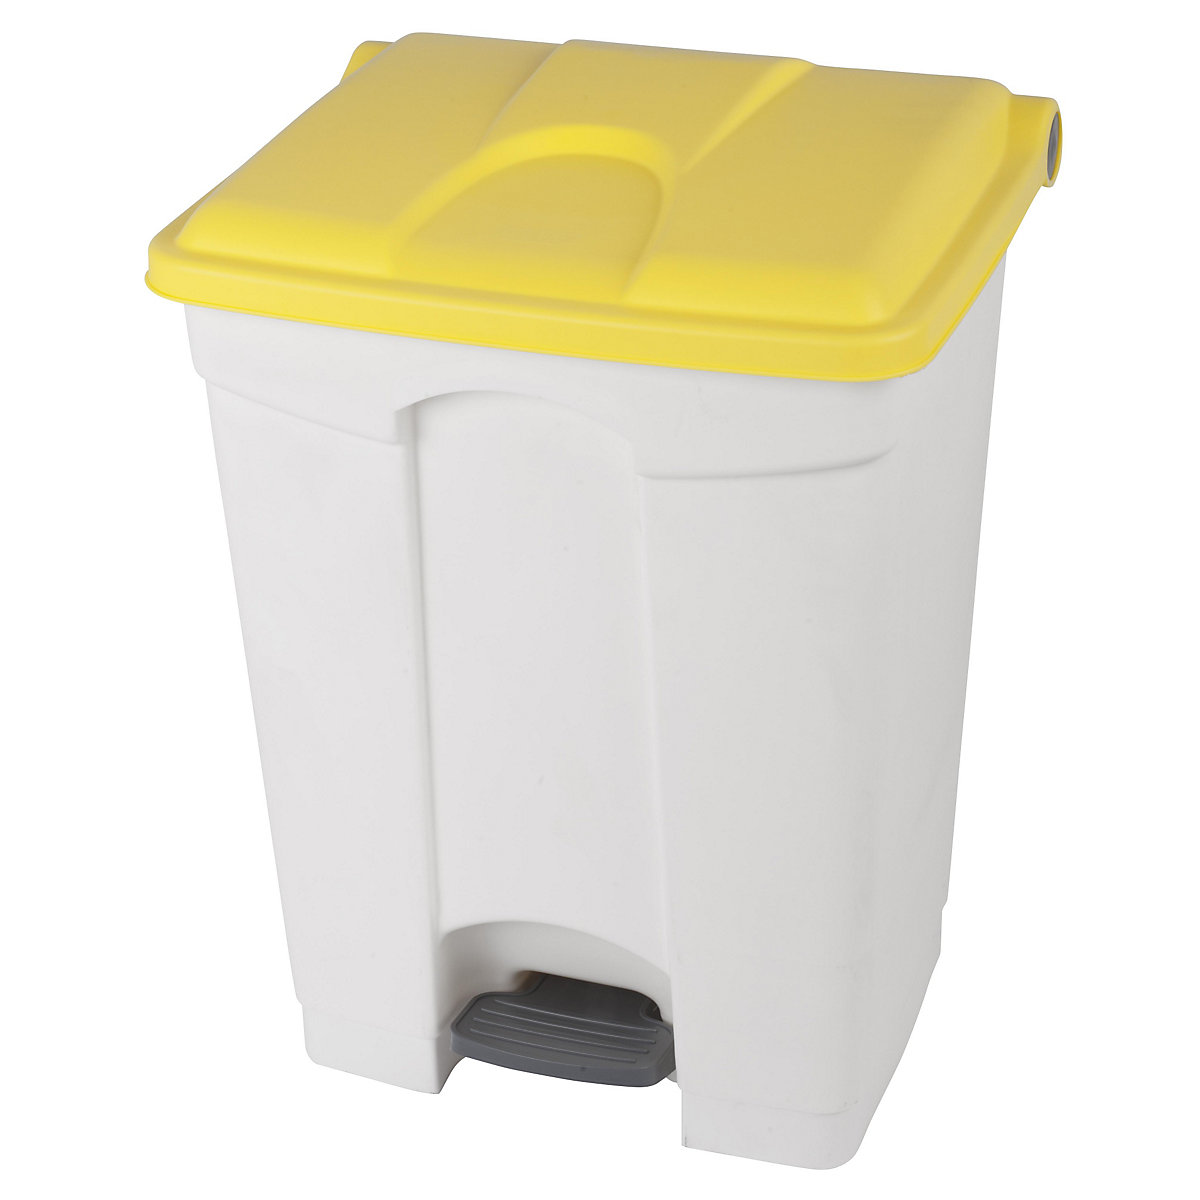 Spremnik za otpad s papučicom, volumen 70 l, ŠxVxD 505 x 675 x 415 mm, u bijeloj boji, poklopac u žutoj boji-7